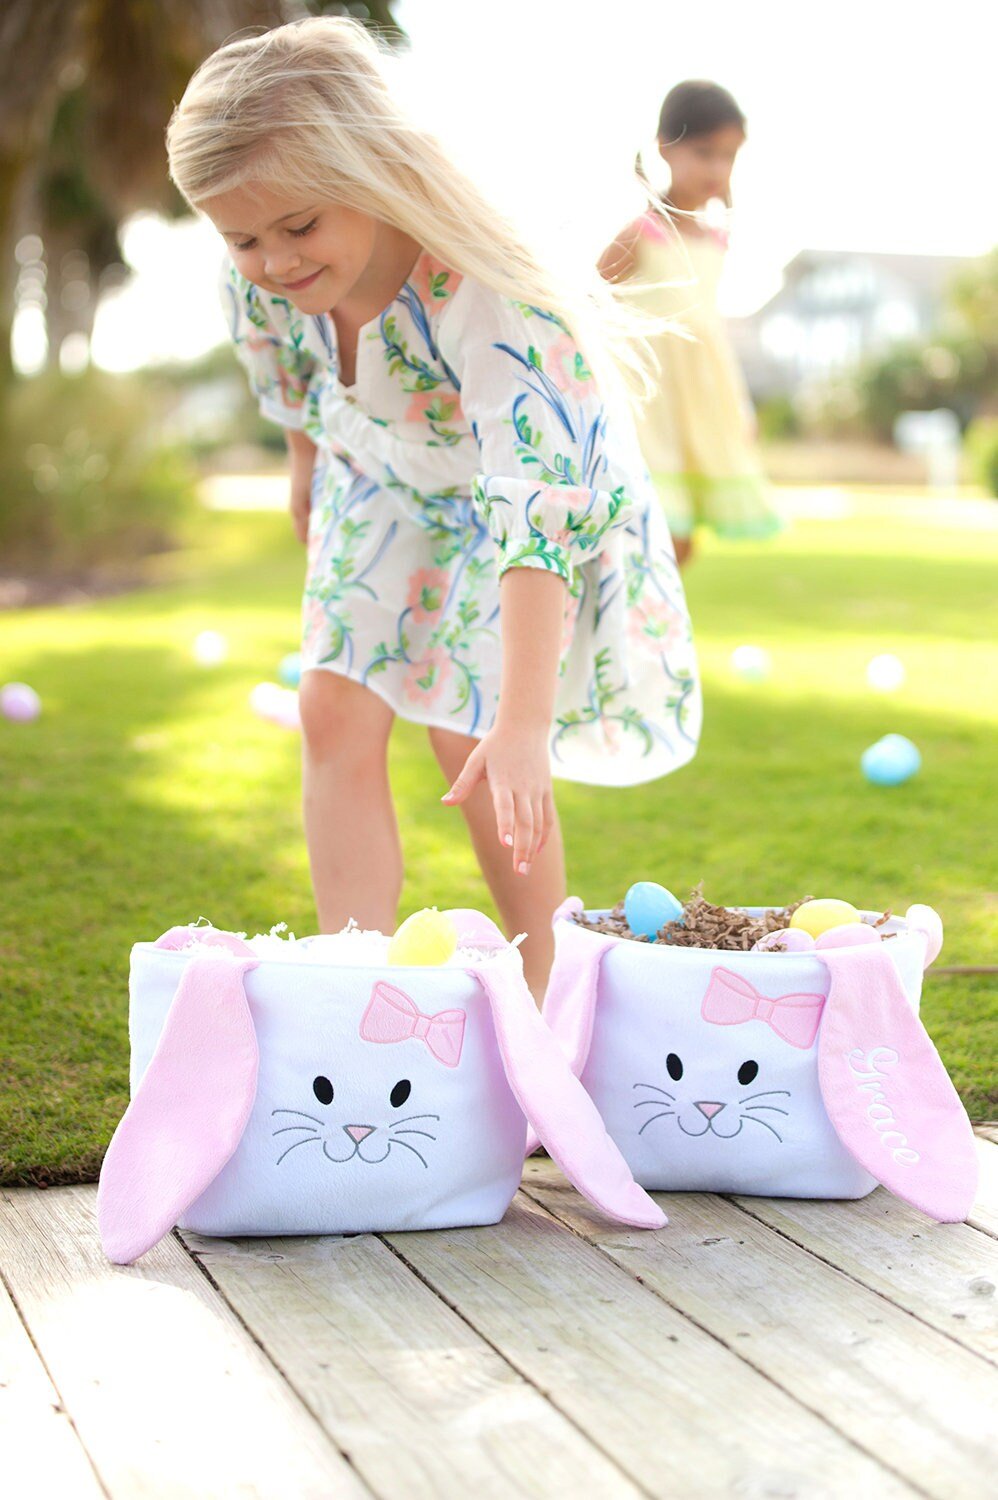 Easter Egg Hunt Bag, Personalized Easter Egg Hunt Bag, Custom Easter Egg  Hunt Bag, Egg Hunt Bag for Easter